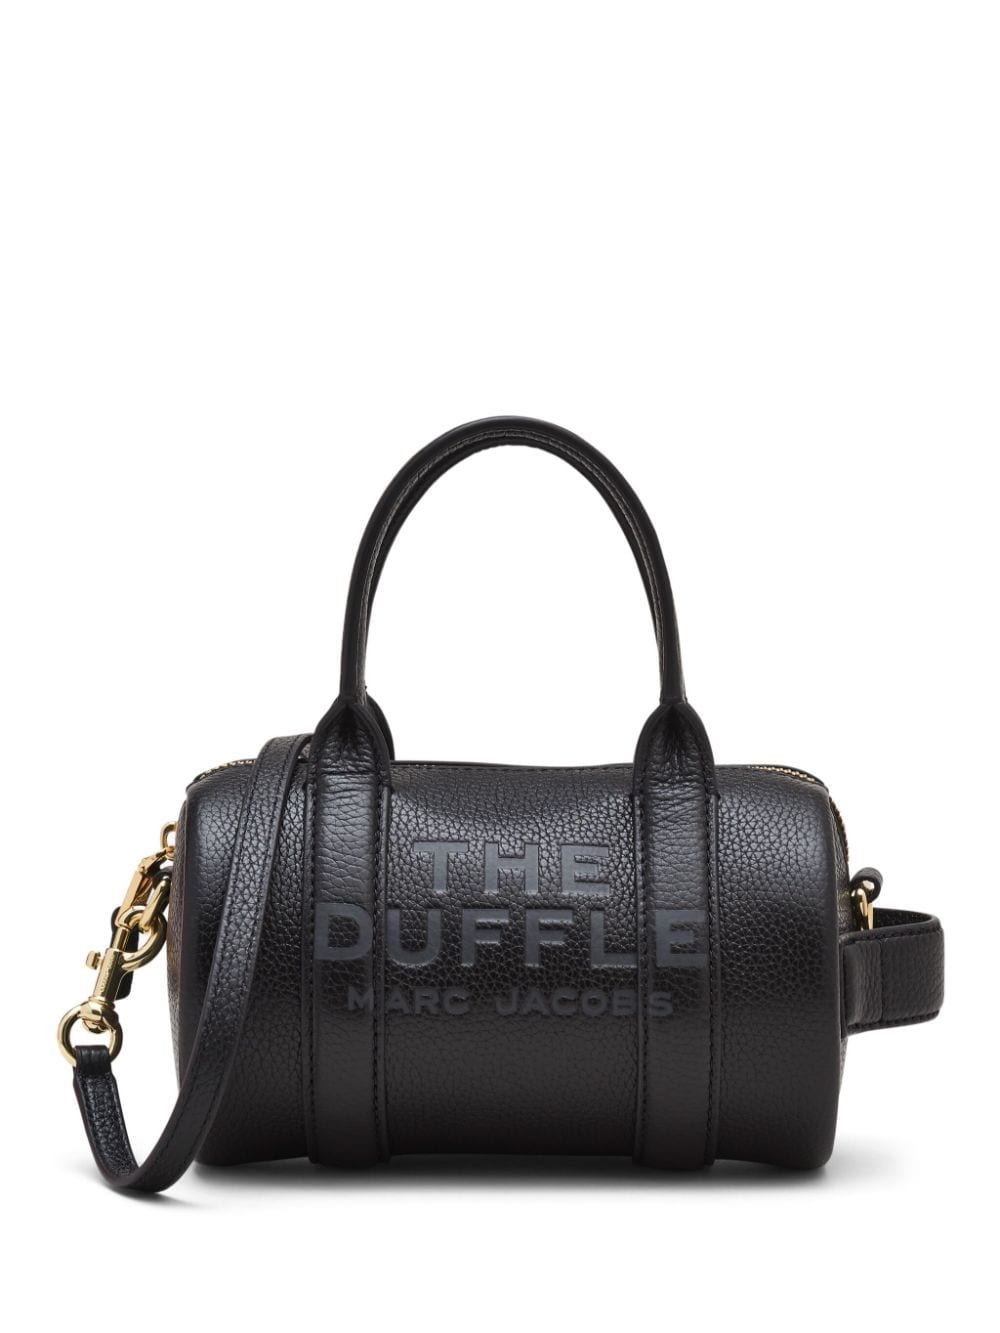 The Mini Leather Duffle bag-0